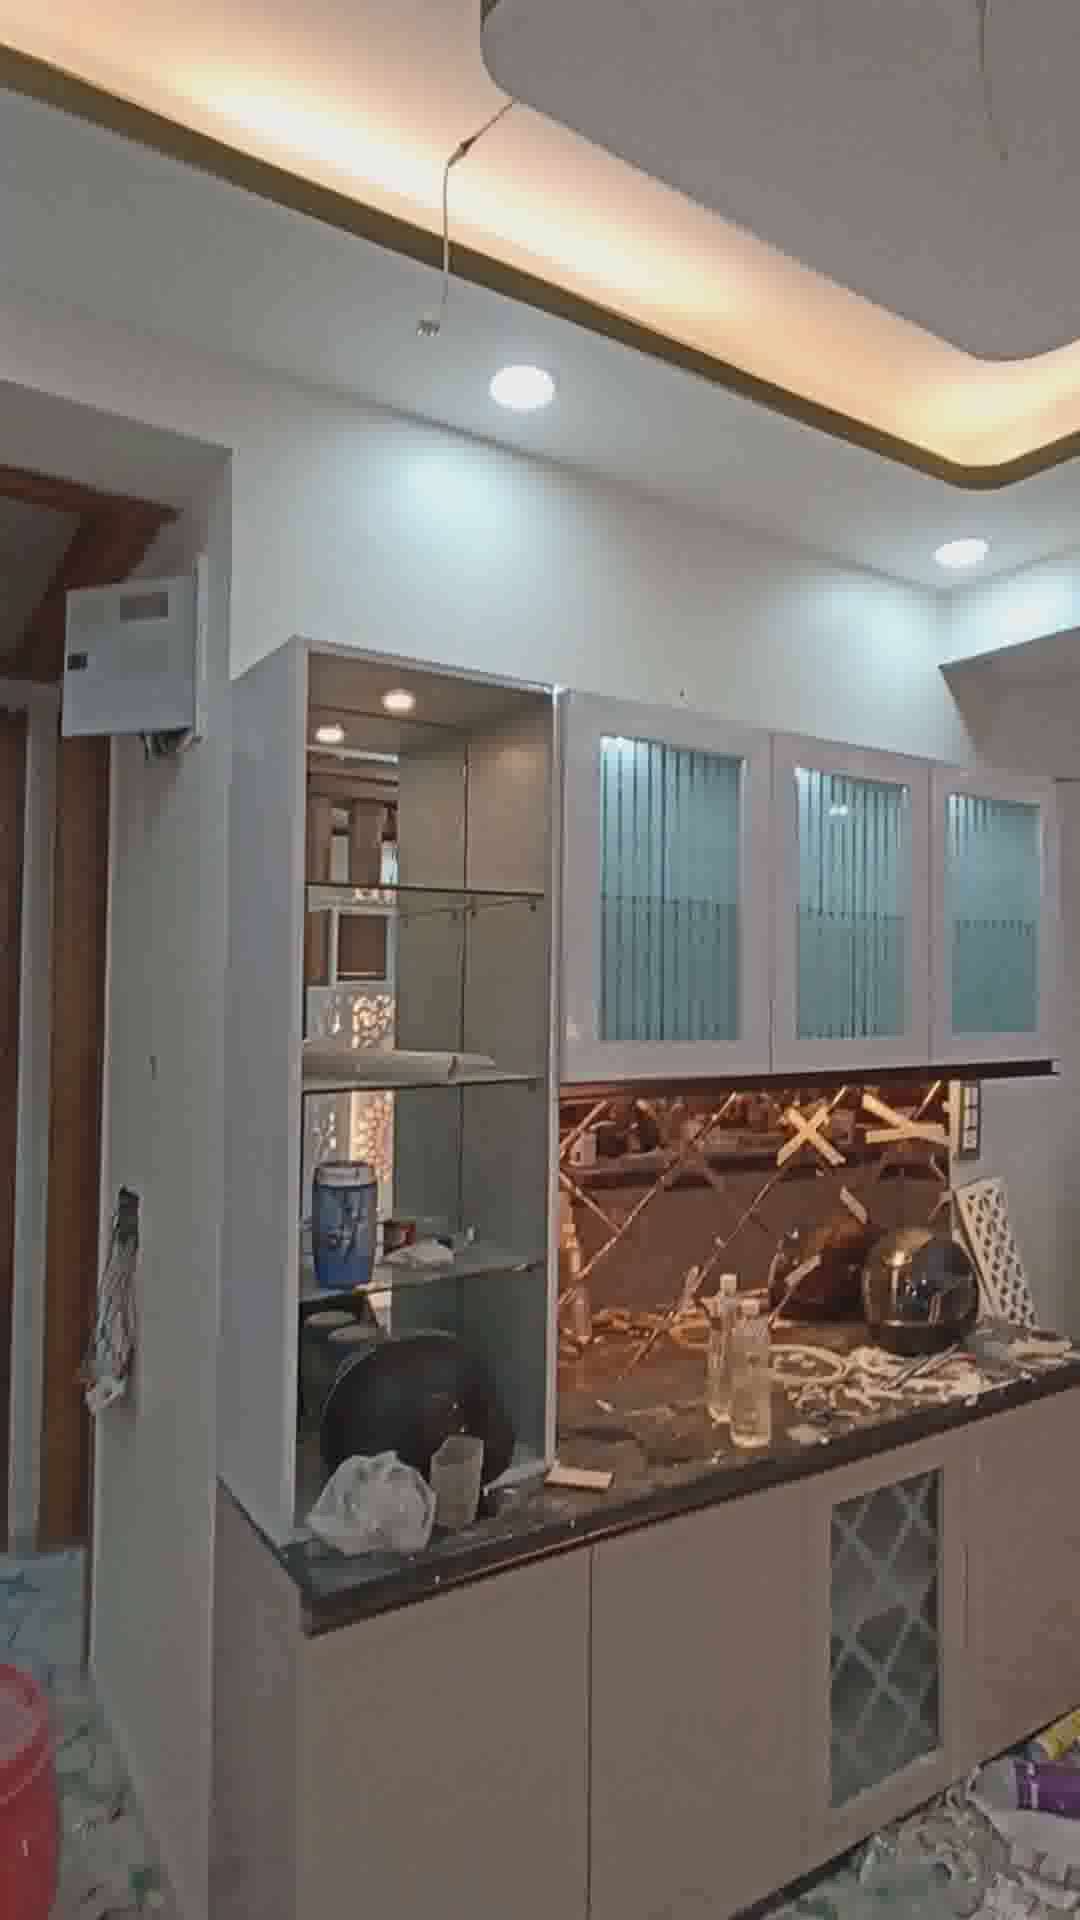 living area kitchen

#InteriorDesigner 
#Carpenter